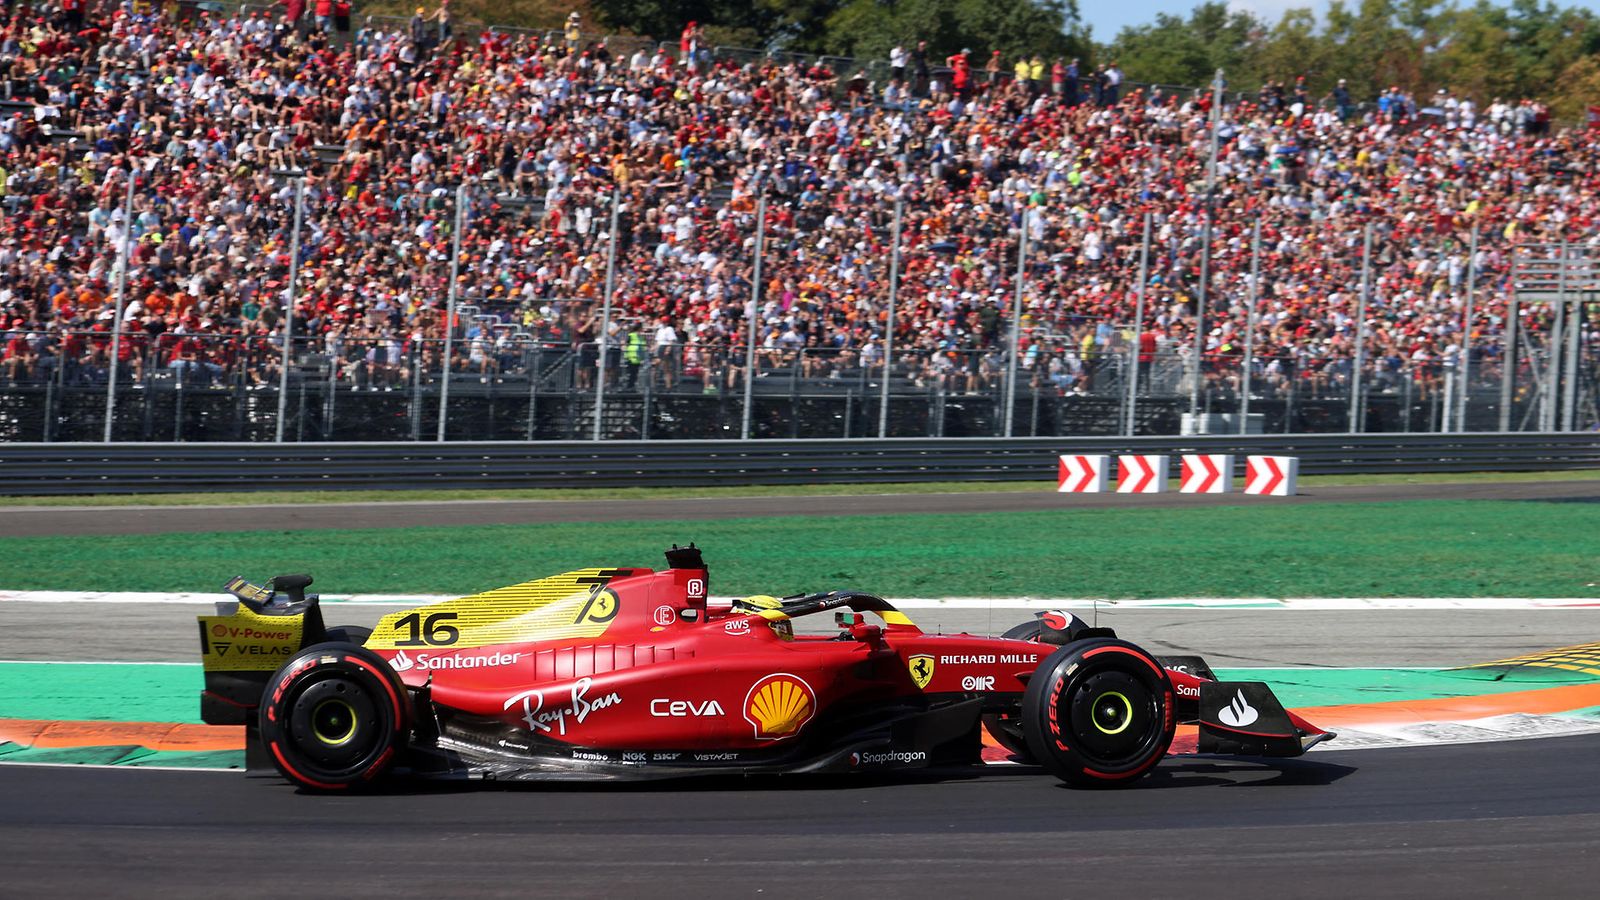 F1: Charles Leclerc paalulle Monzassa, Max Verstappen tipahtaa  seitsemänneksi 